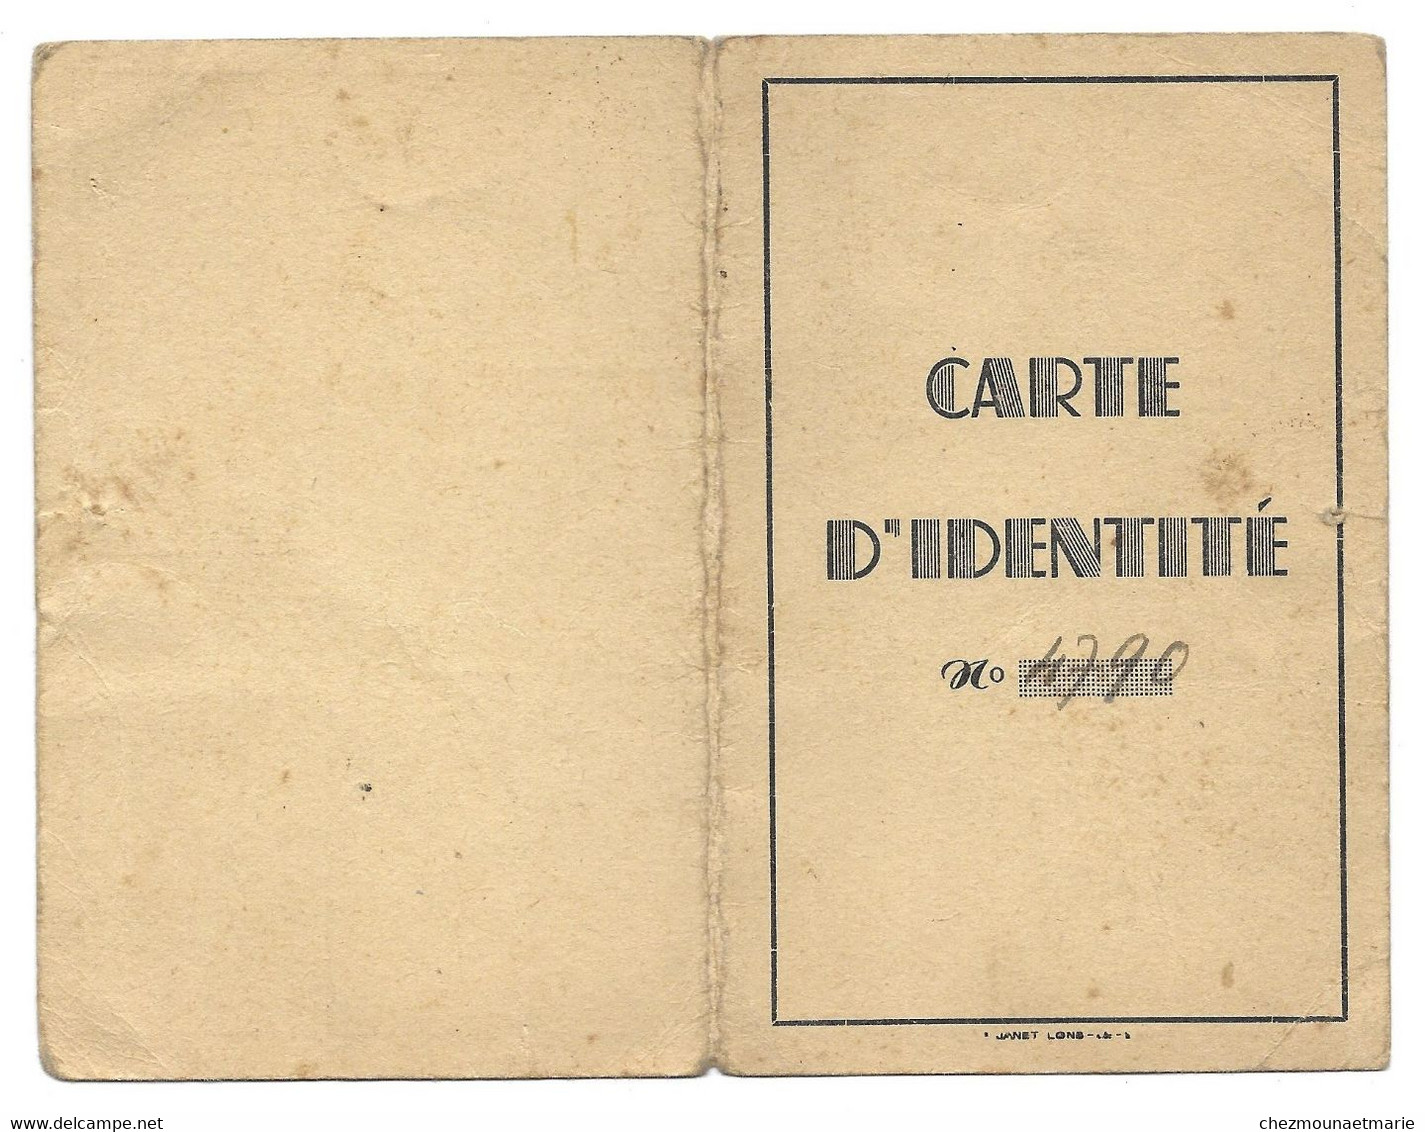 1943 LONS LE SAUNIER LUGAND CLAIRE EP FAIVRE NE A LONS EN 1897 BOUCHERE - CARTE IDENTITE - Historical Documents